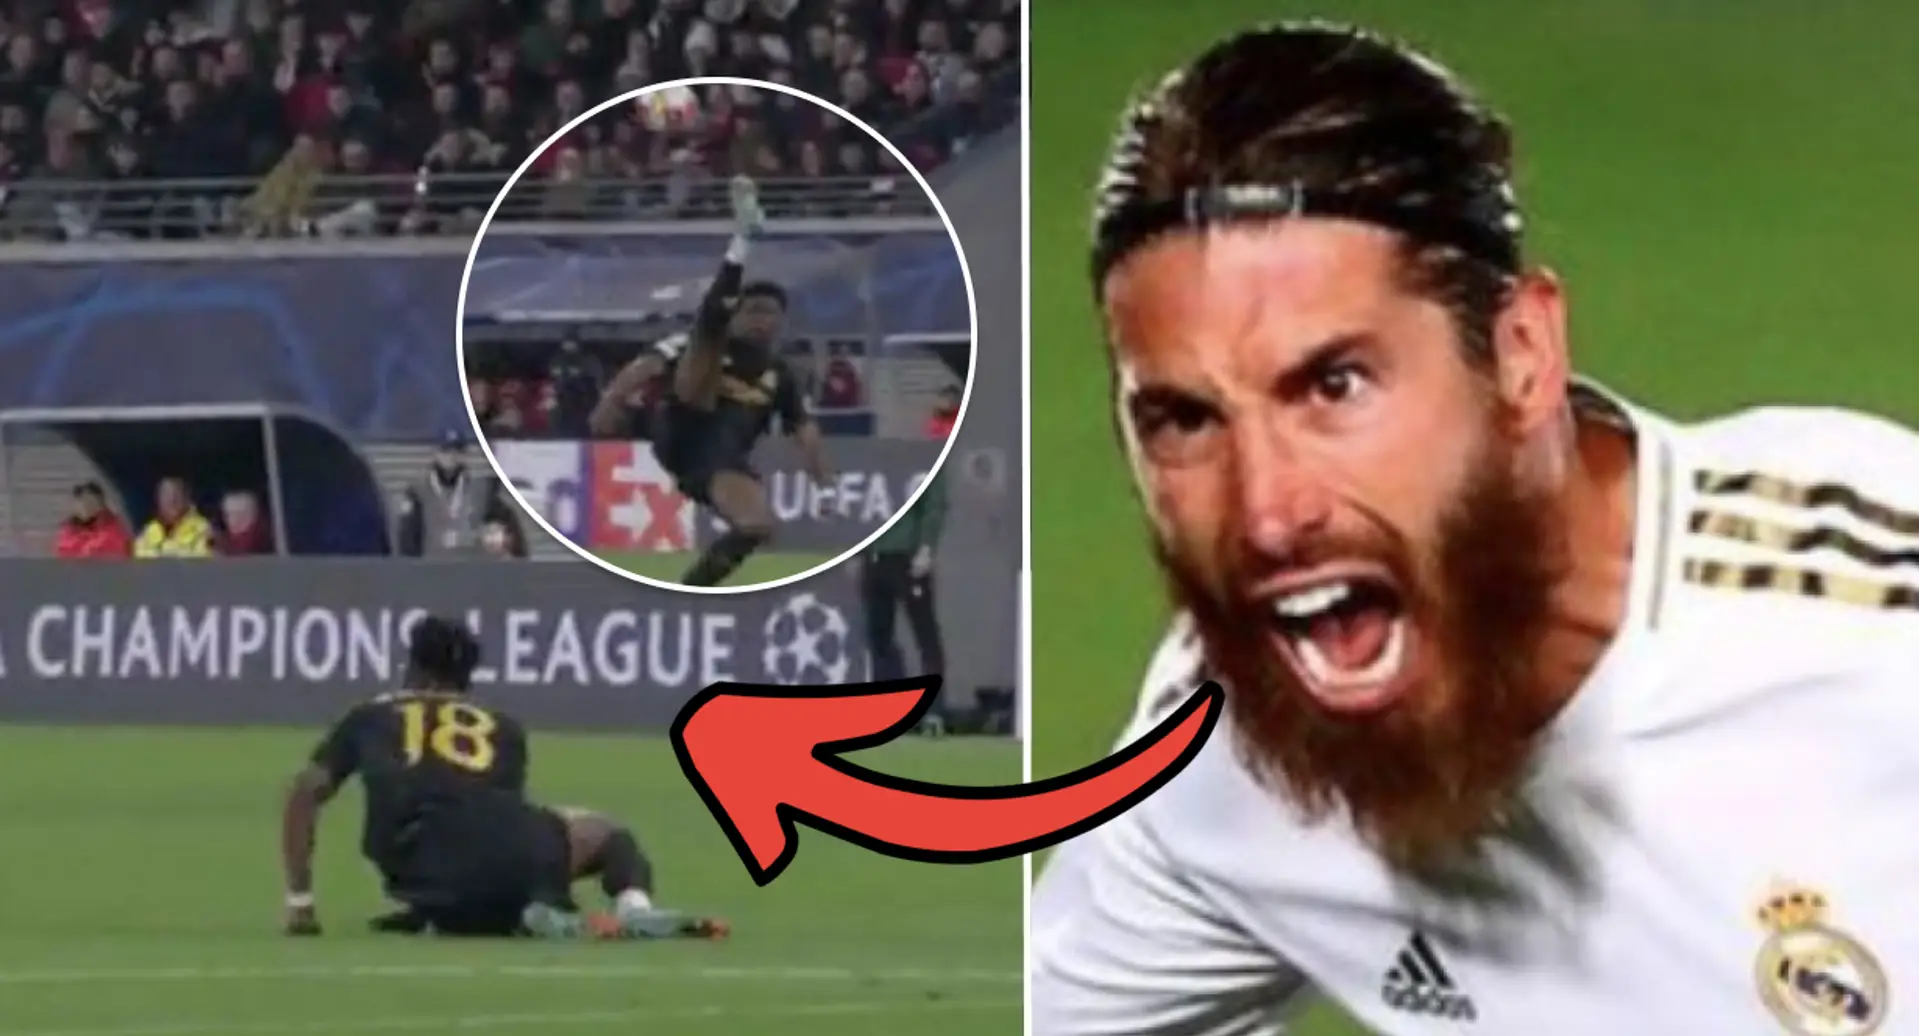 "Frère, il bouge comme Ramos": les Madridistas réagissent alors que Tchouameni réussit un saut acrobatique insensé vs Leipzig